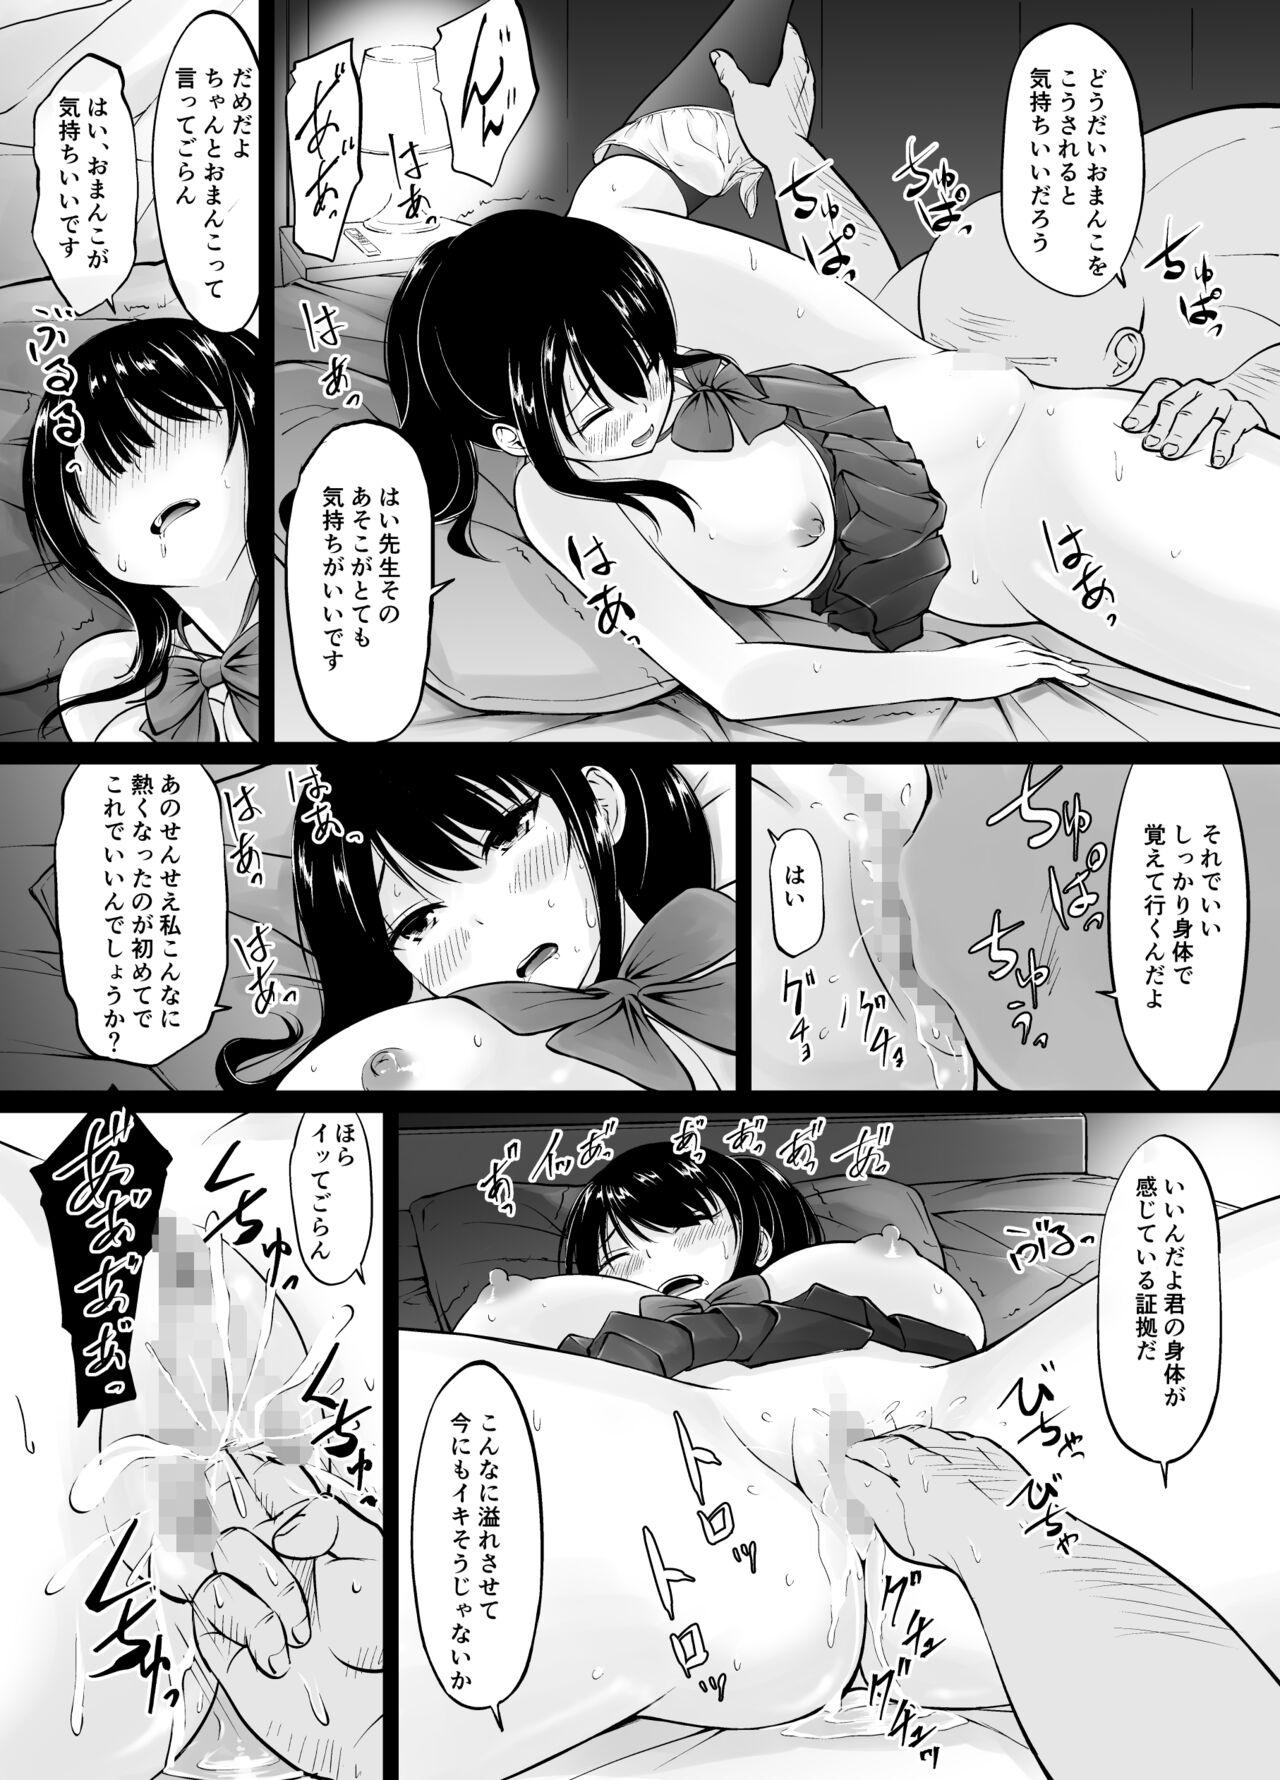 Safadinha Meimon jogakuin no ko tsukuri kobetsu jisshuu - Original Hot Girl Fucking - Page 9